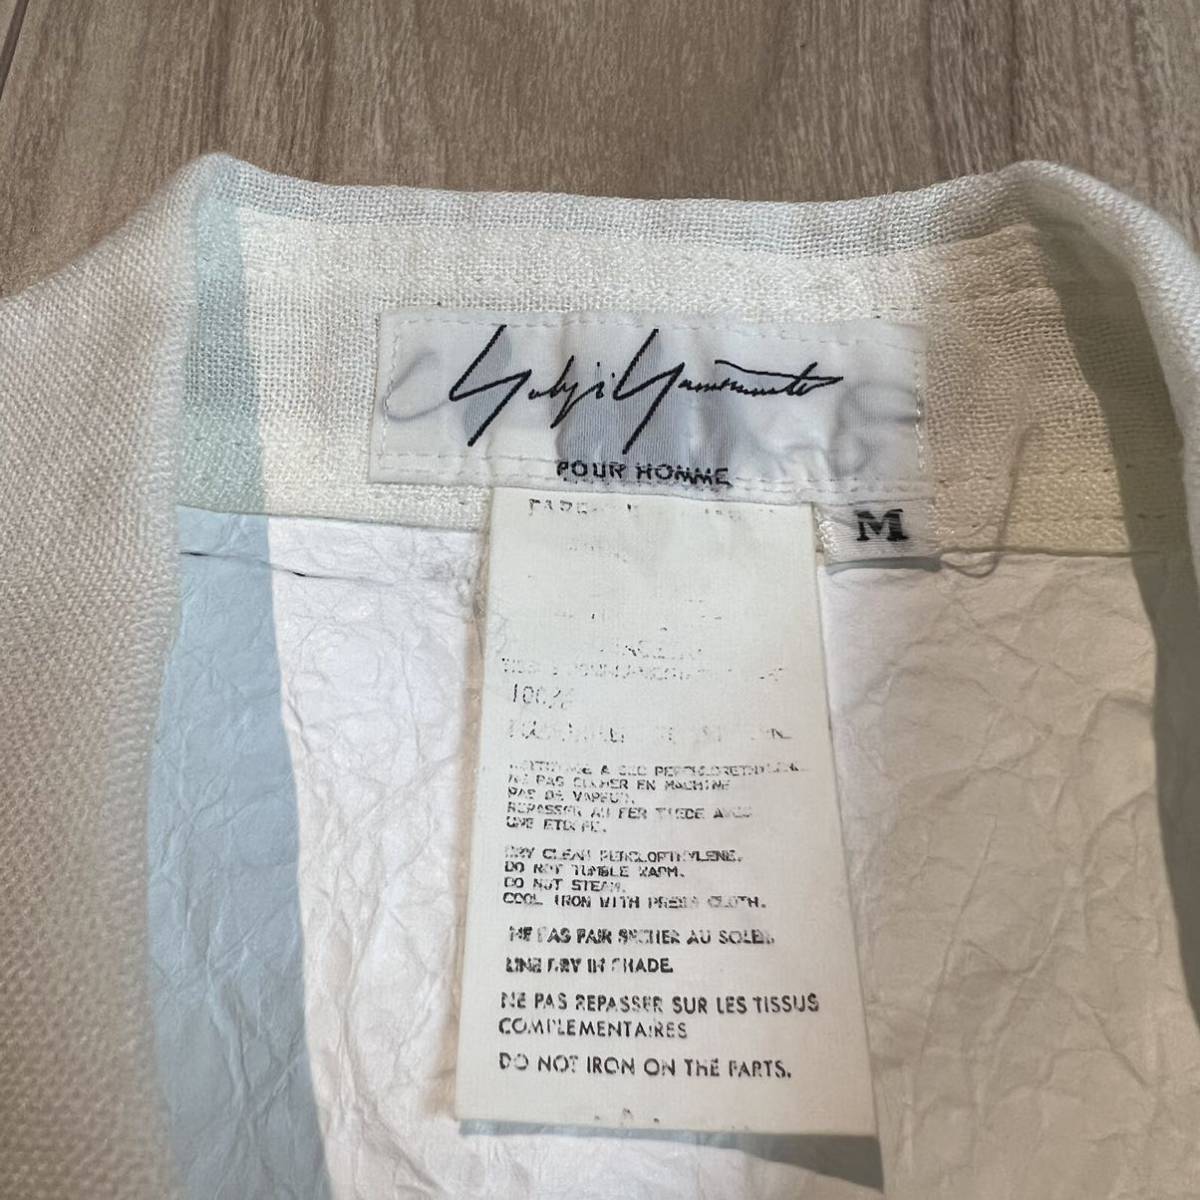 [ очень редкий ]1999ss Yohji yamamoto POUR HOMME Yohji Yamamoto бассейн Homme японская бумага переключатель рубашка с длинным рукавом белый белый мужской R-3404